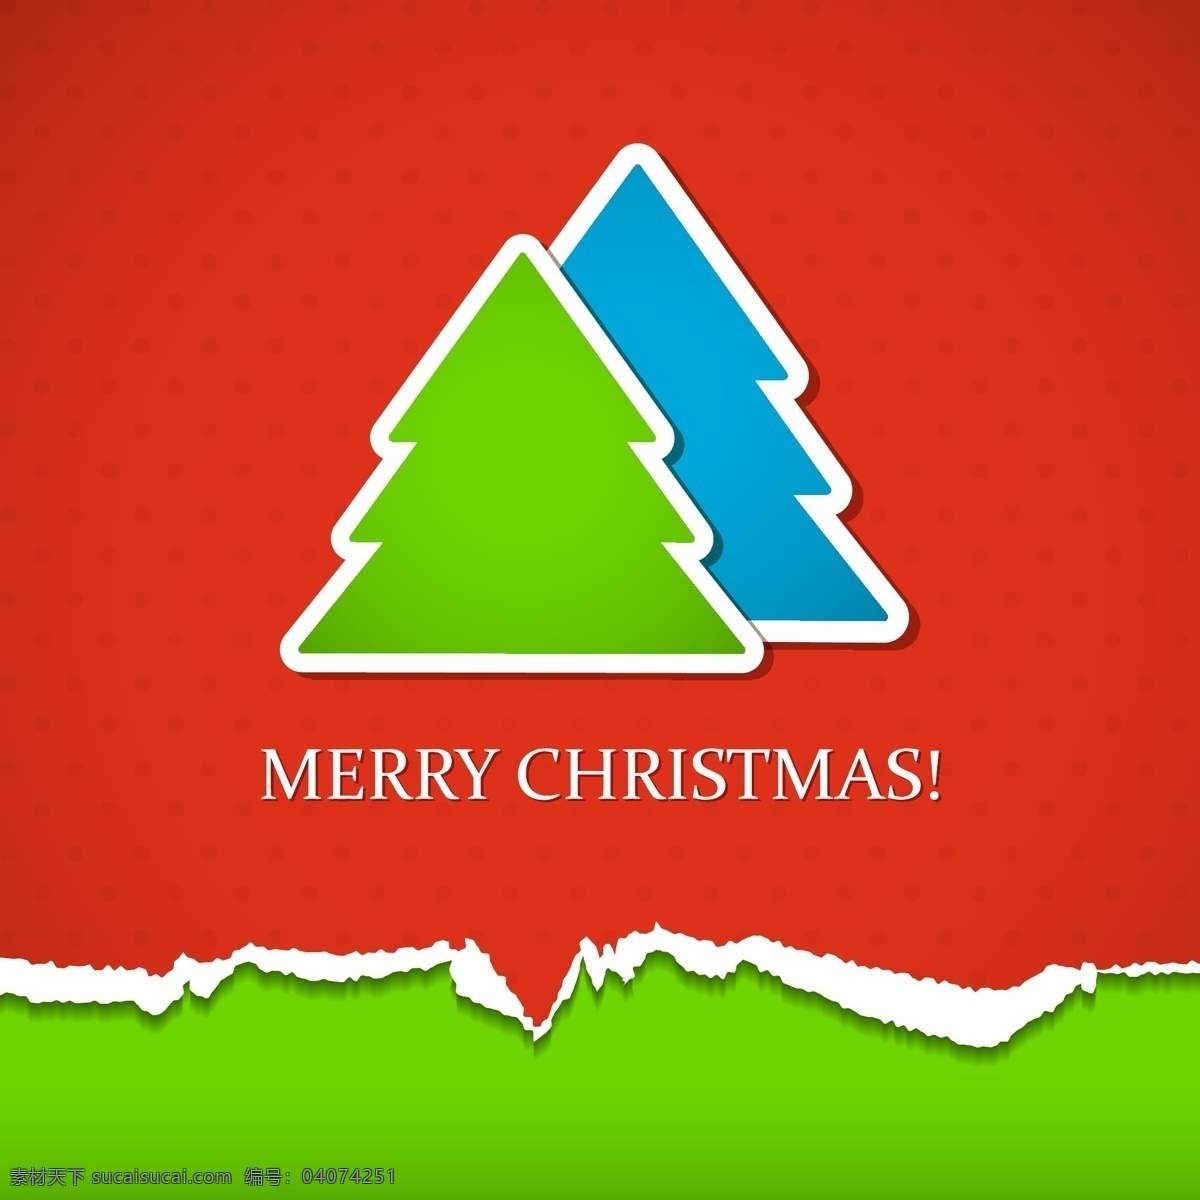 圣诞背景设计 贺卡 卡片 底纹背景 圣诞贺卡 矢量背景 展板背景 矢量素材 圣诞树 矢量树 底纹边框 红色